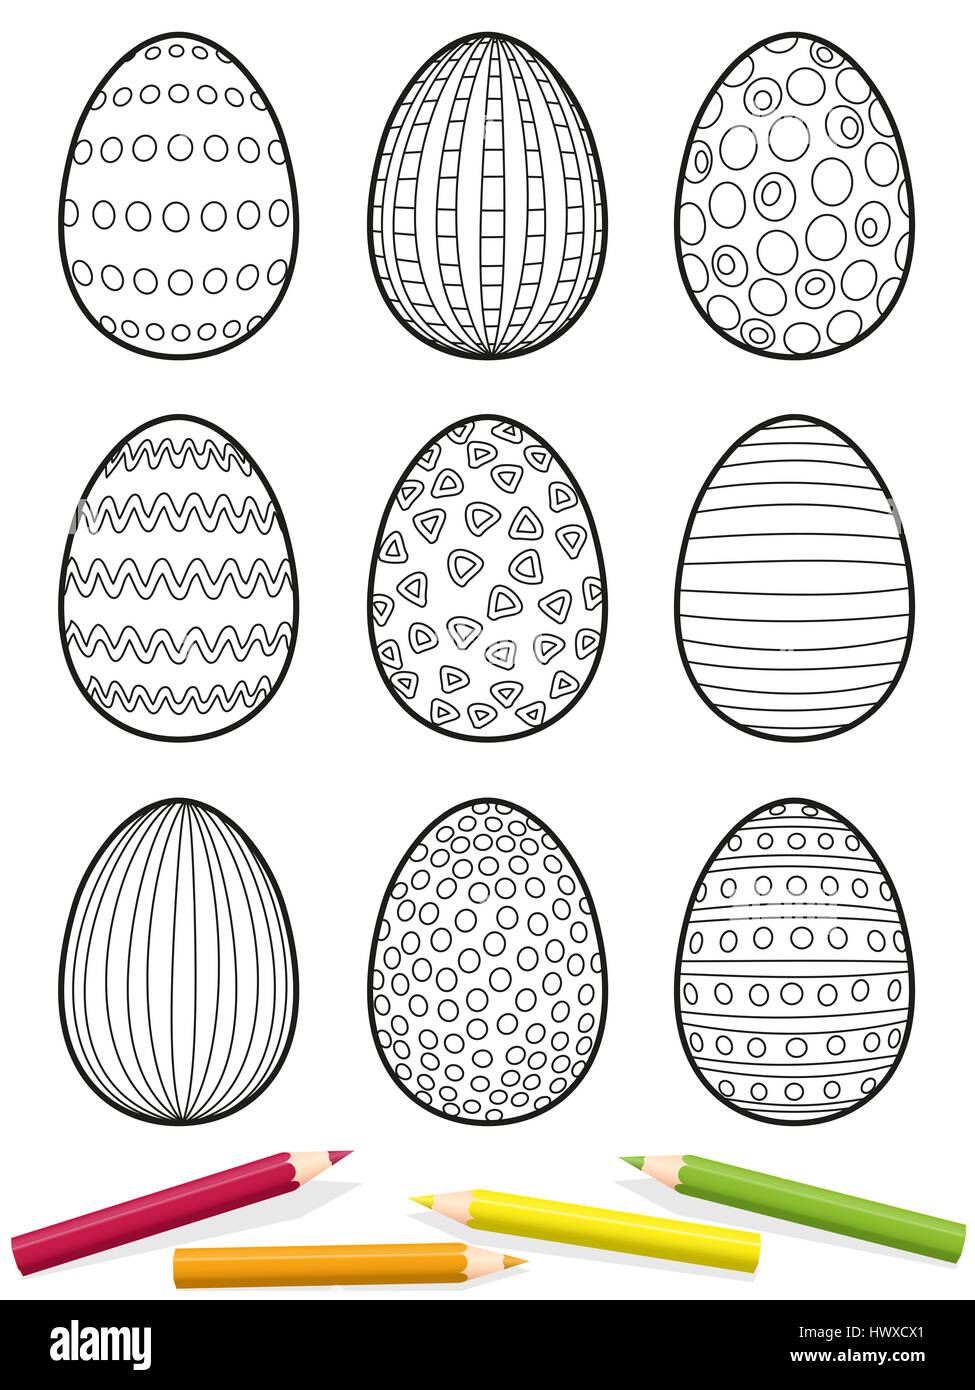 Le uova di pasqua di pagina di colorazione - nove uova con diverse configurazioni per essere colorato - illustrazione isolato su sfondo bianco. Foto Stock